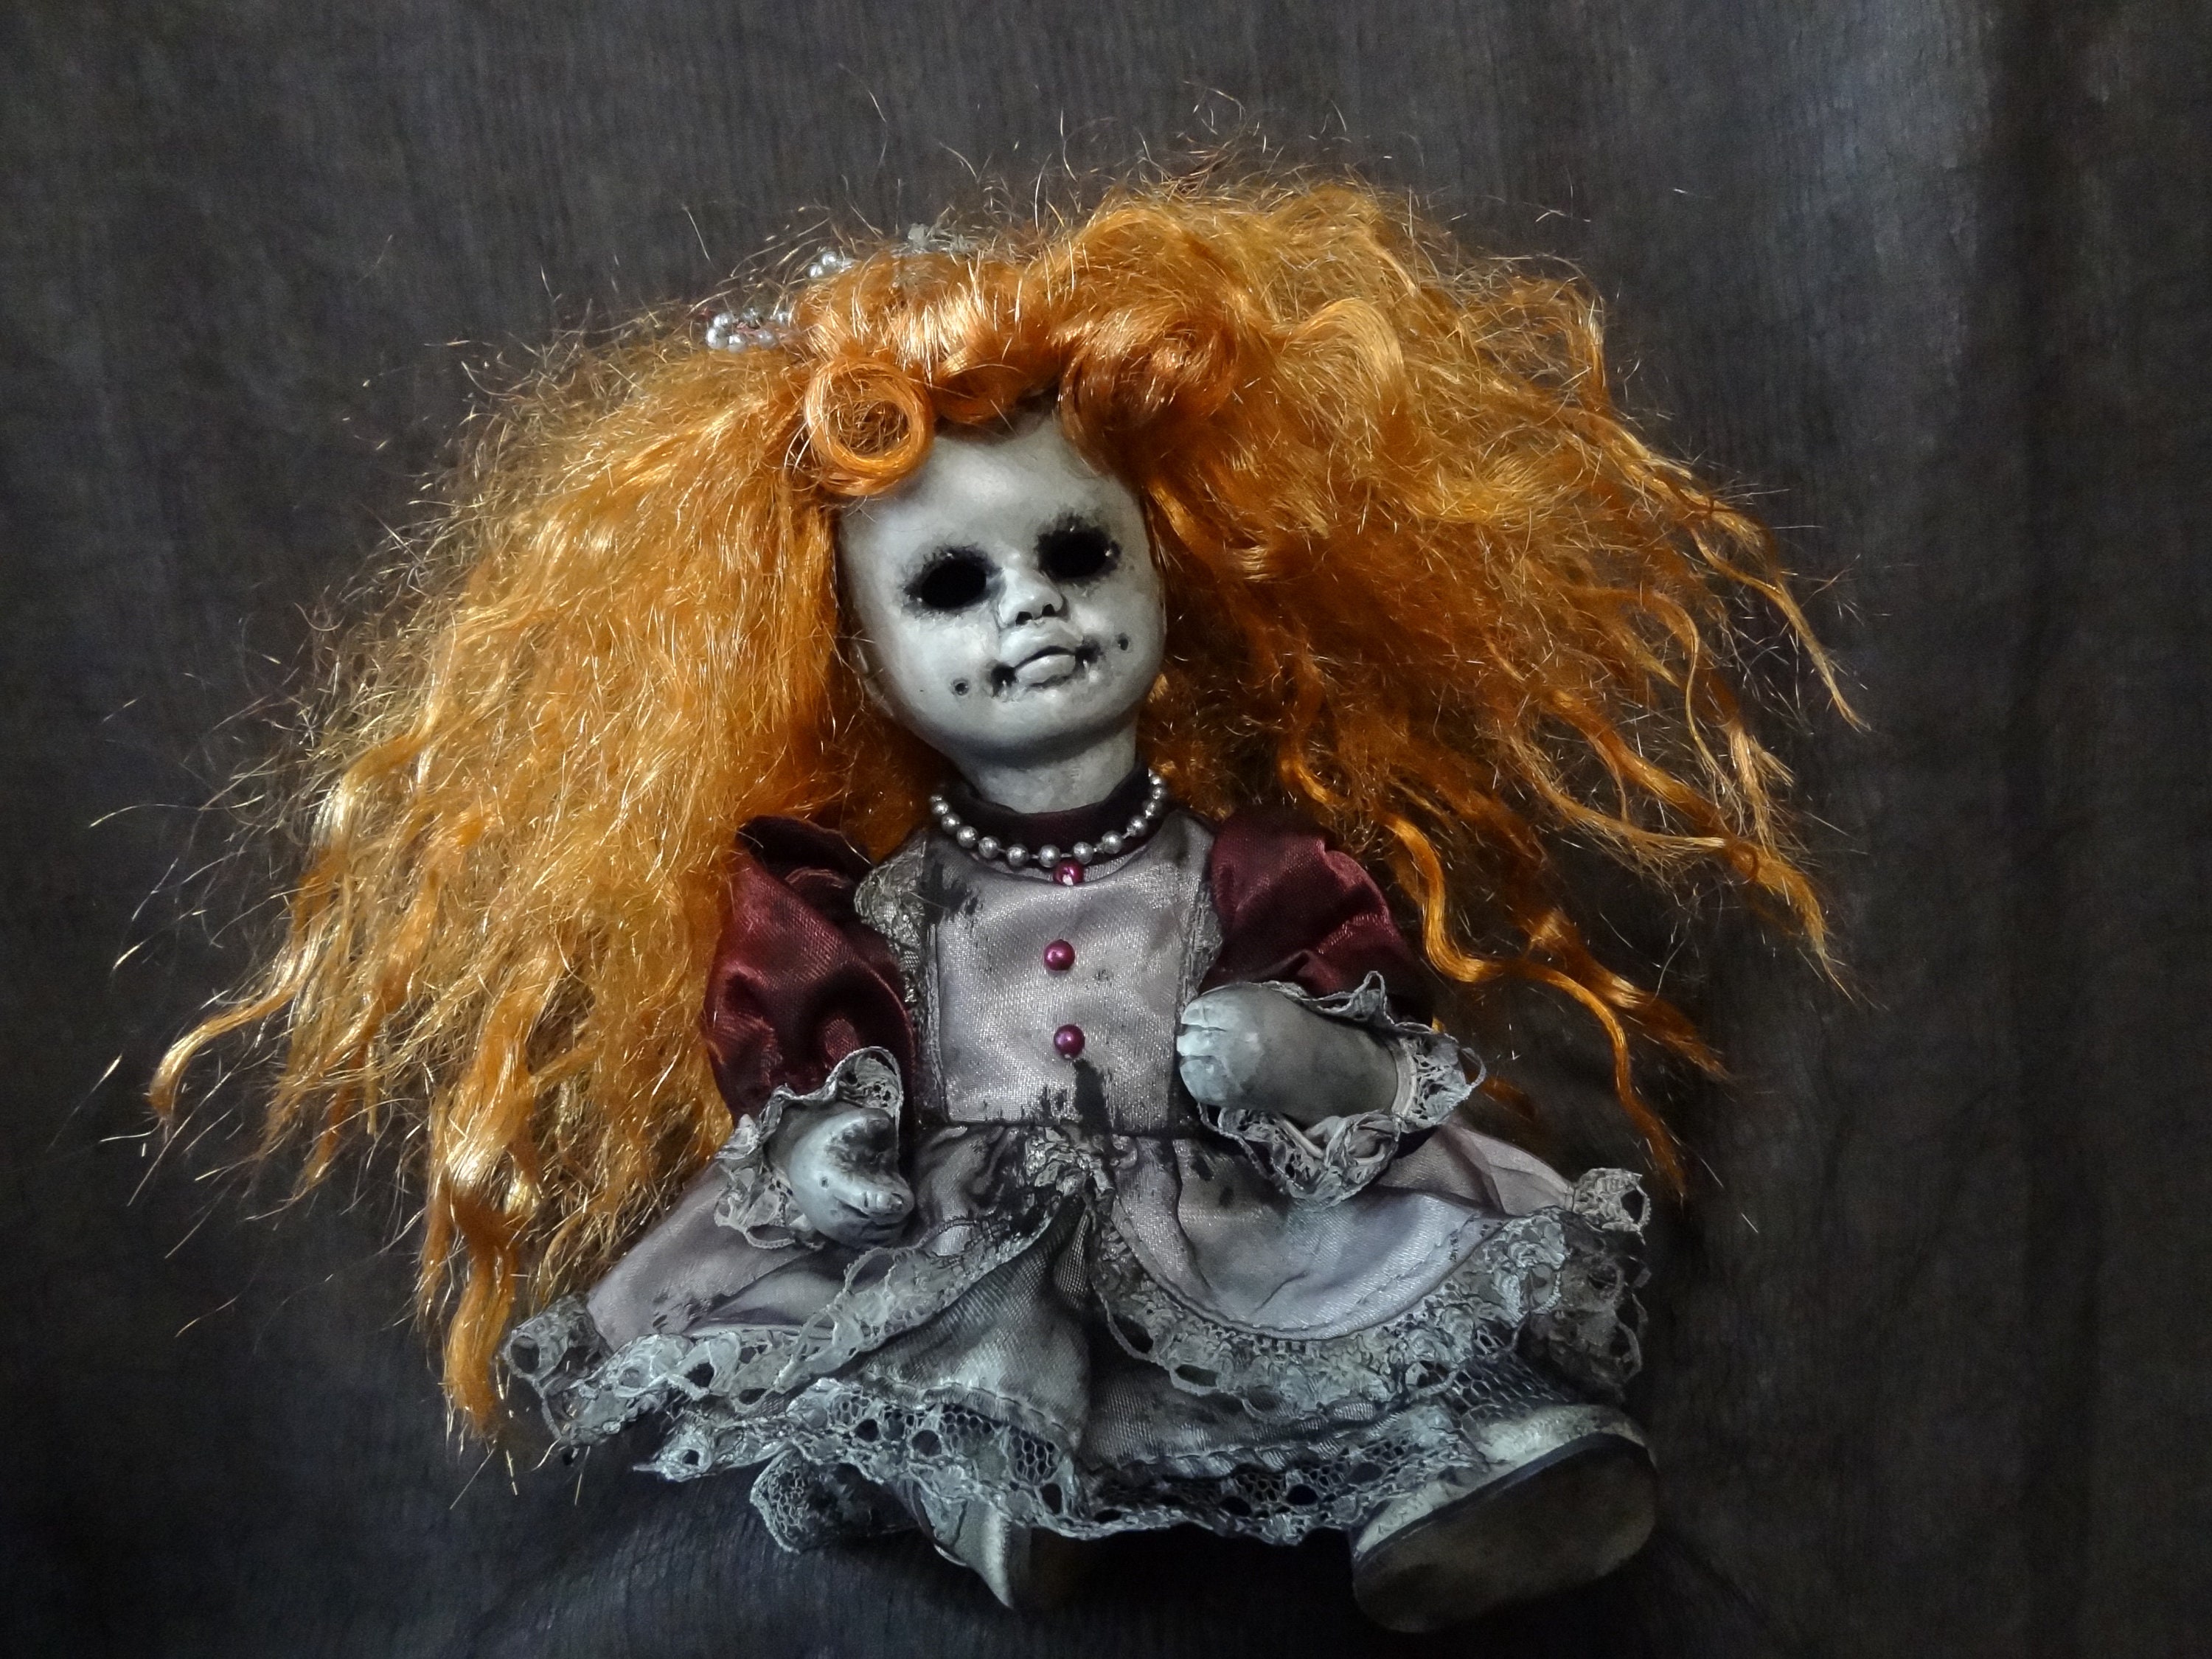 Halloween Costume Ideas: Creepy Doll & Vampire Makeup and Hair | Hannah  Blair - YouTube